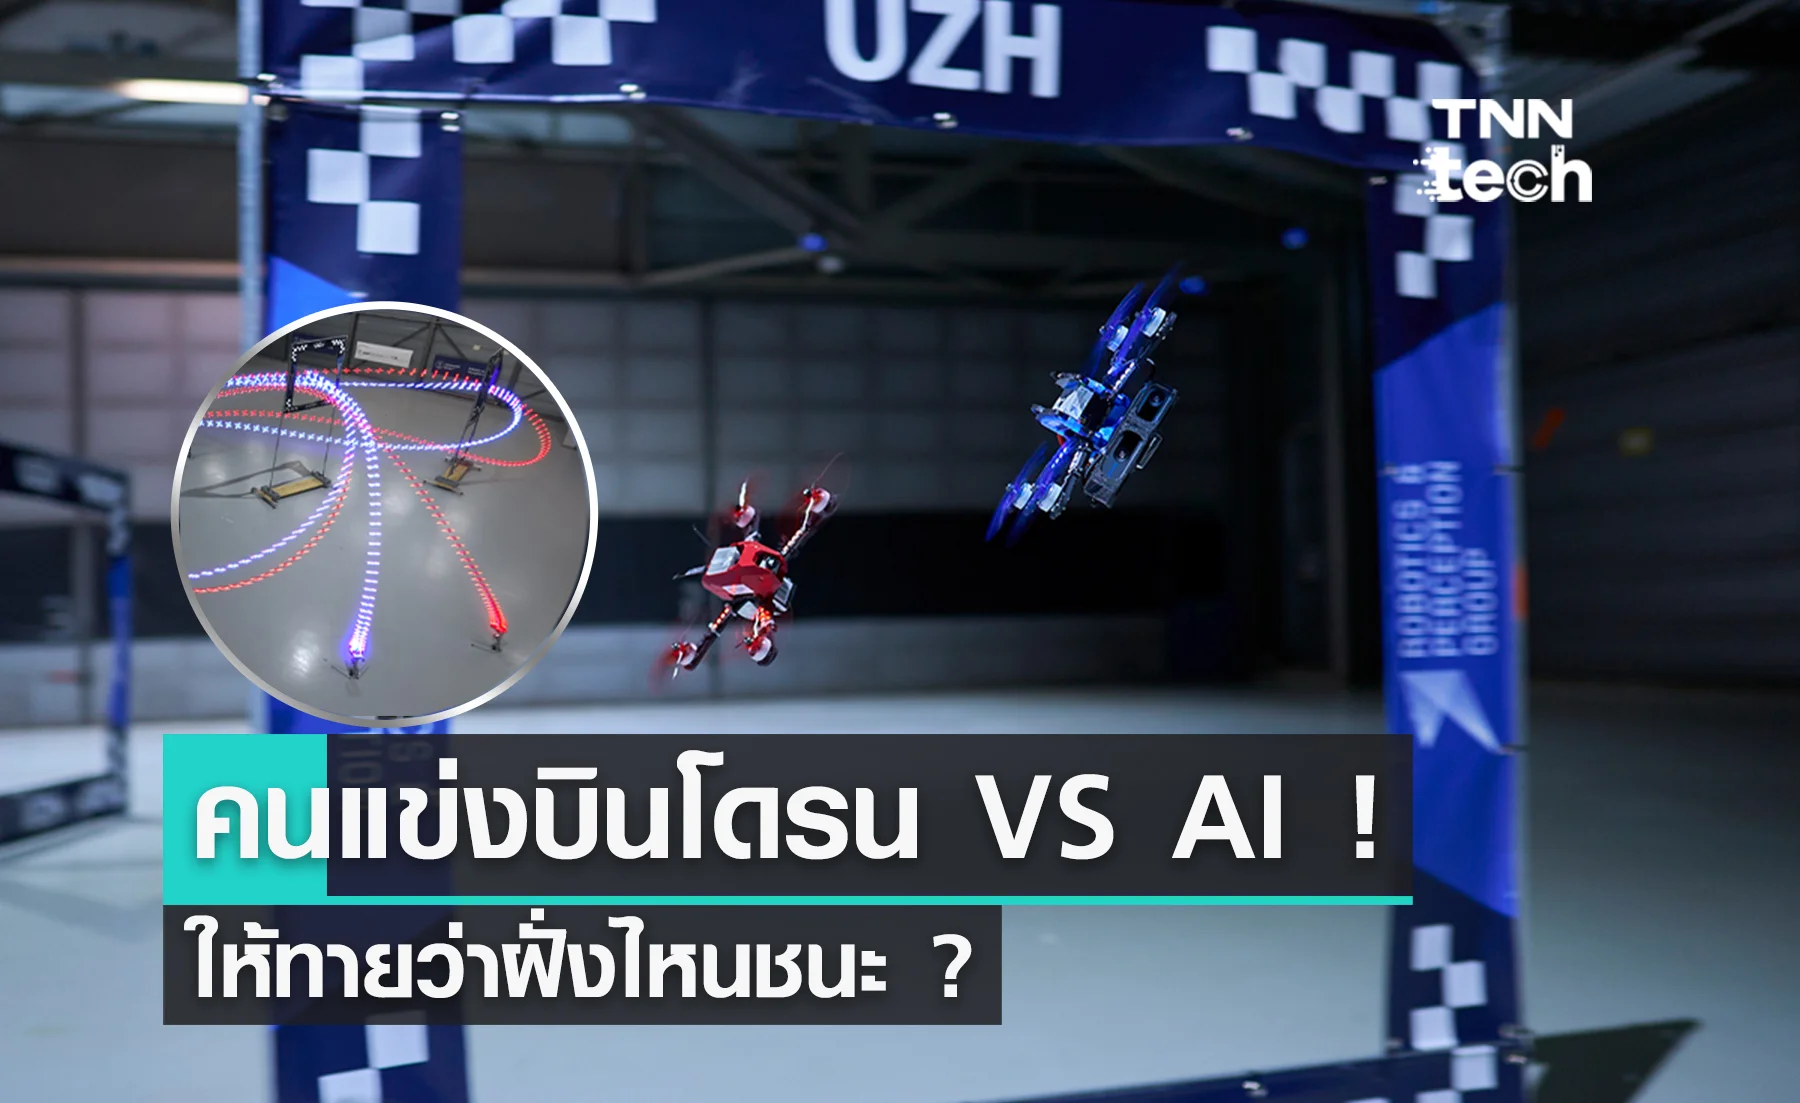 แชมป์ระดับโลกแข่งบินโดรนผาดโผนกับ AI ให้ทายว่าฝั่งไหนชนะ ?